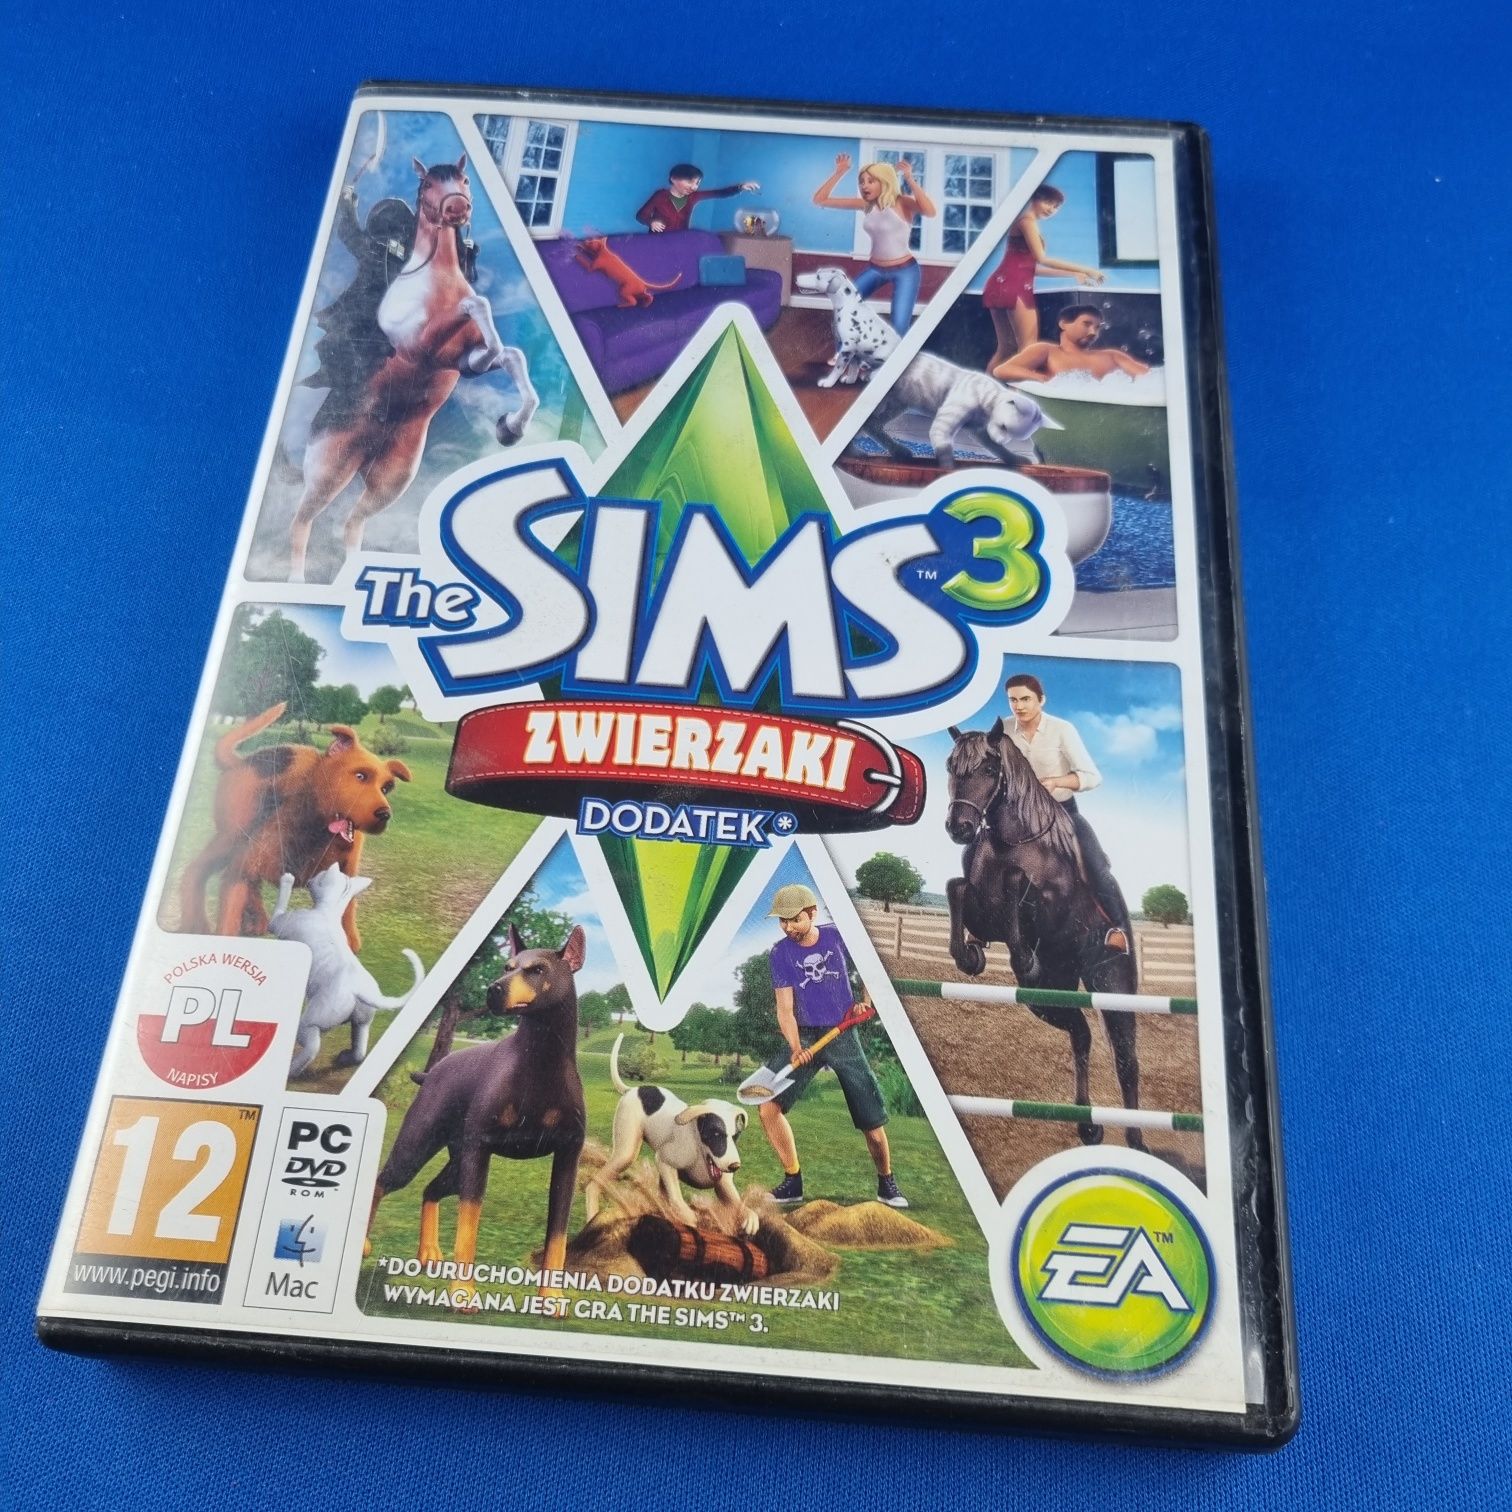 The Sims 3 Zwierzaki PC Polska edycja